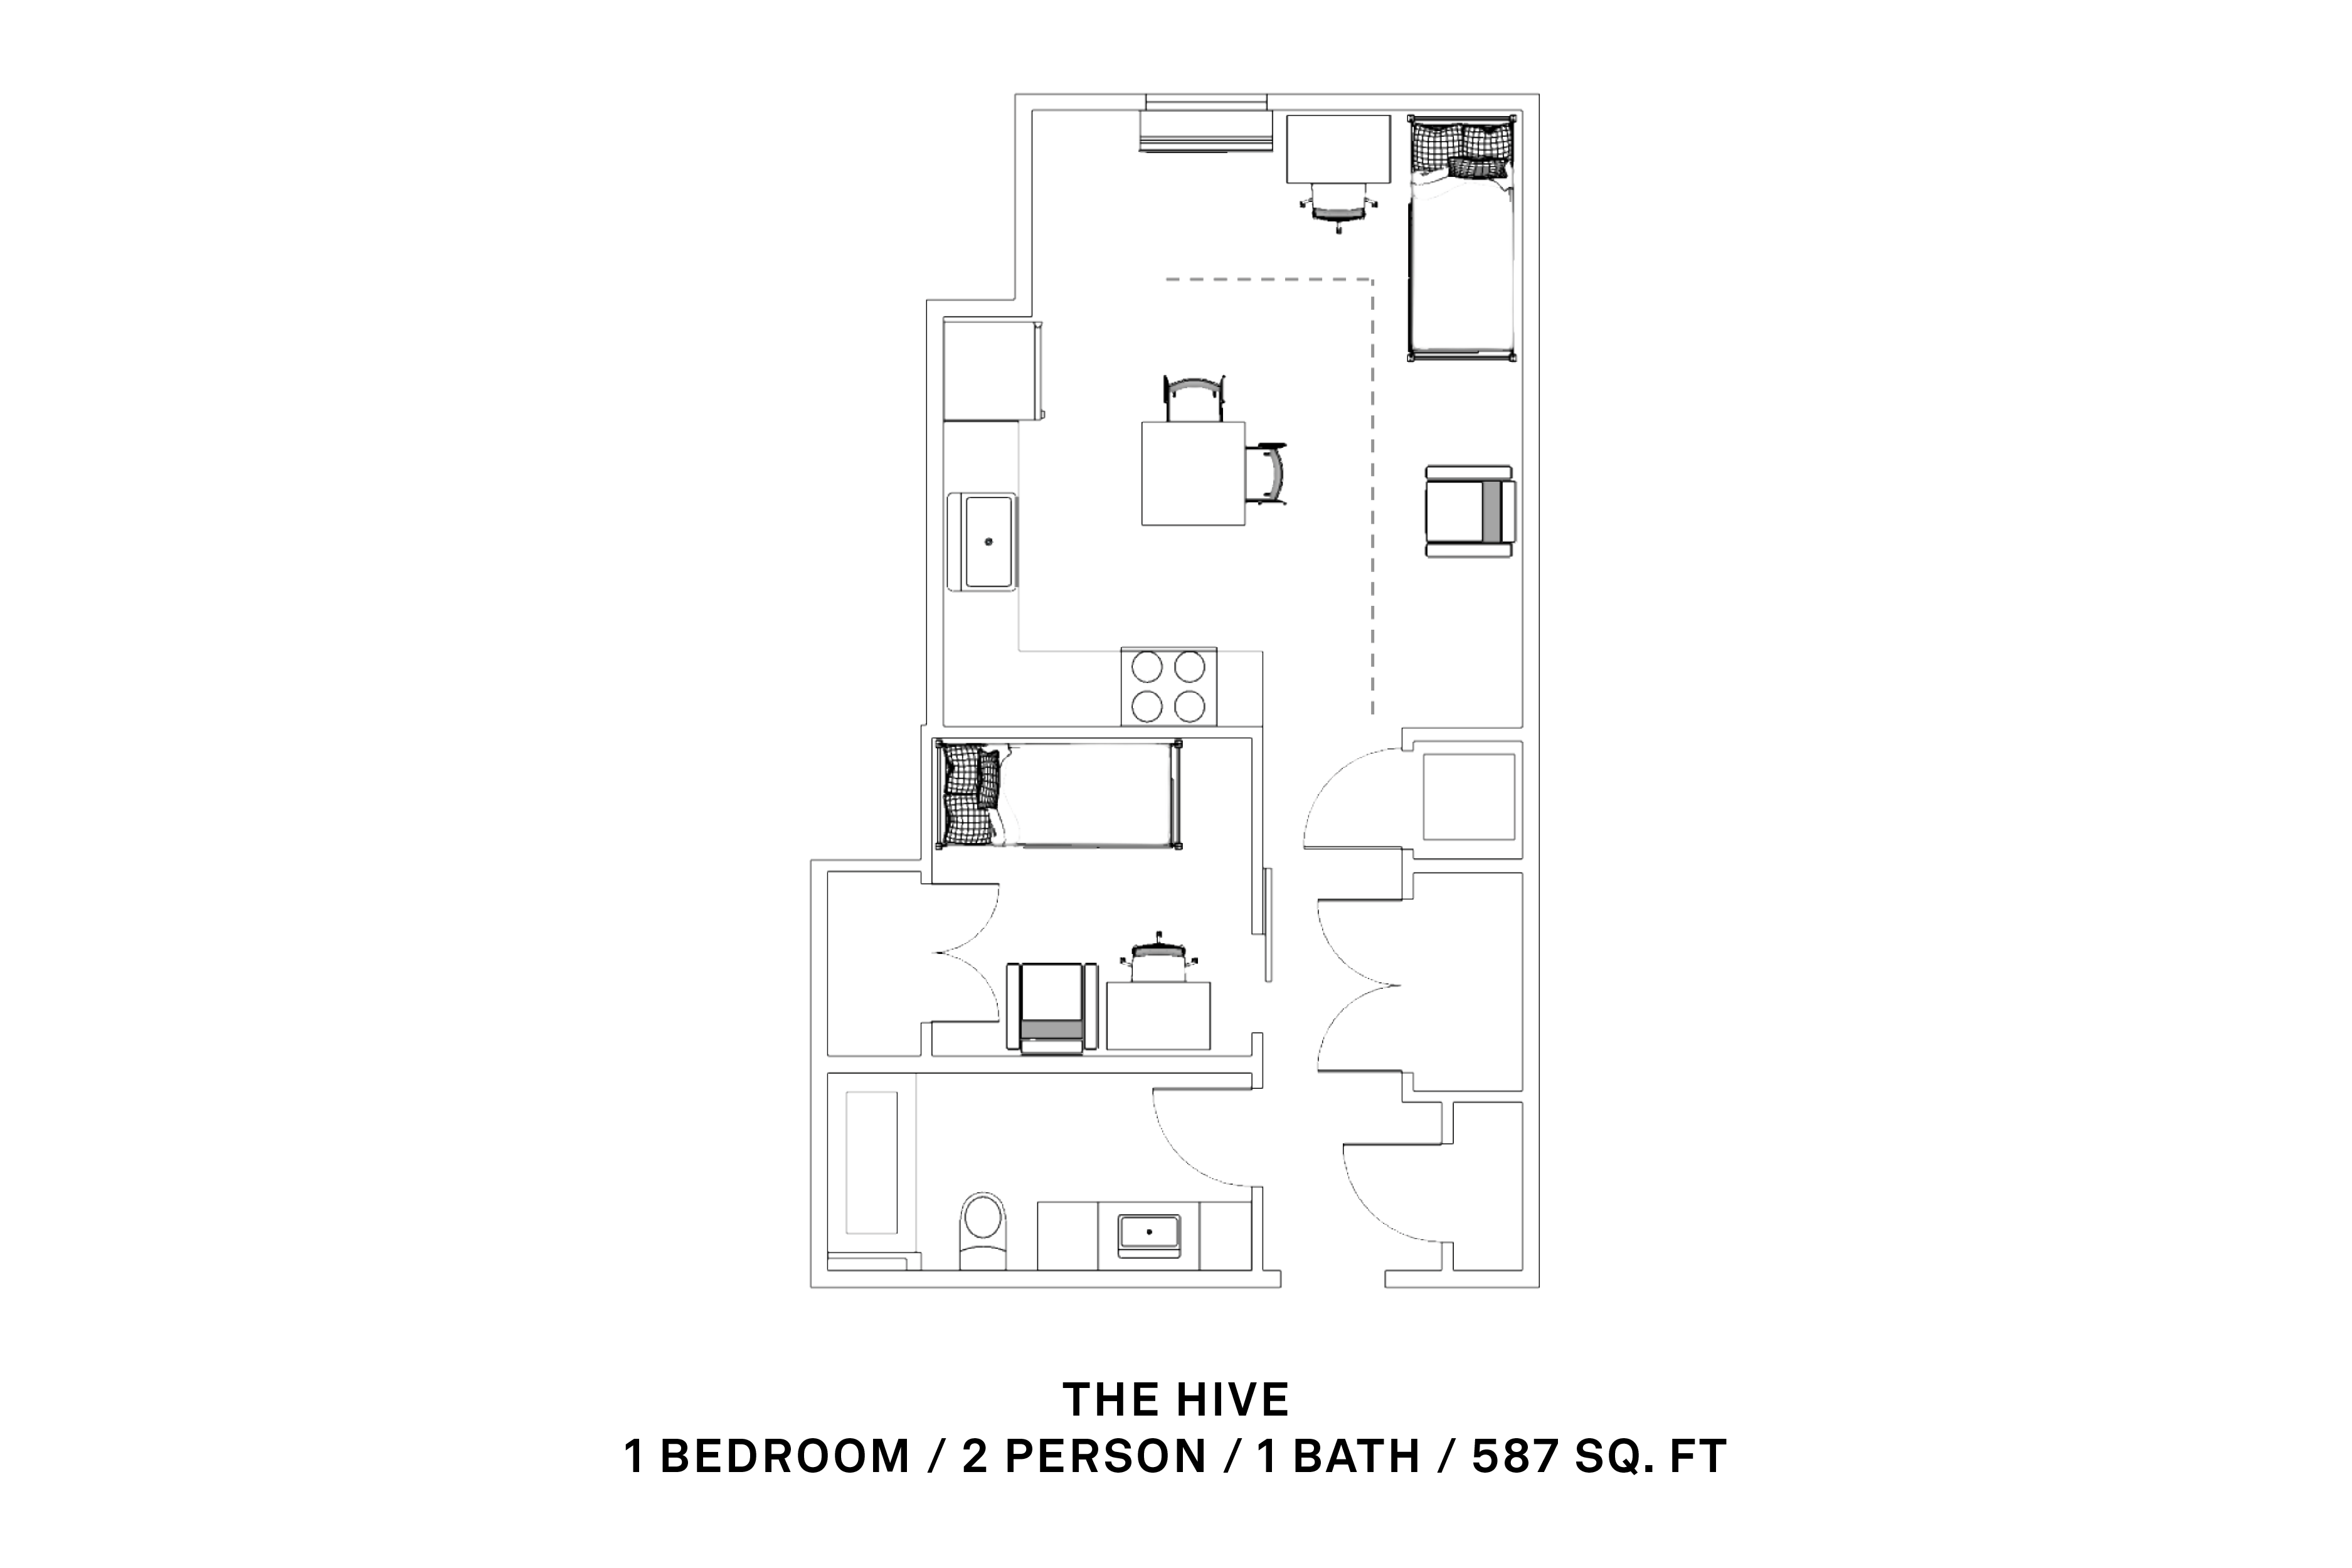 1 bedroom, 2 person, 1 bath; 587 sq ft